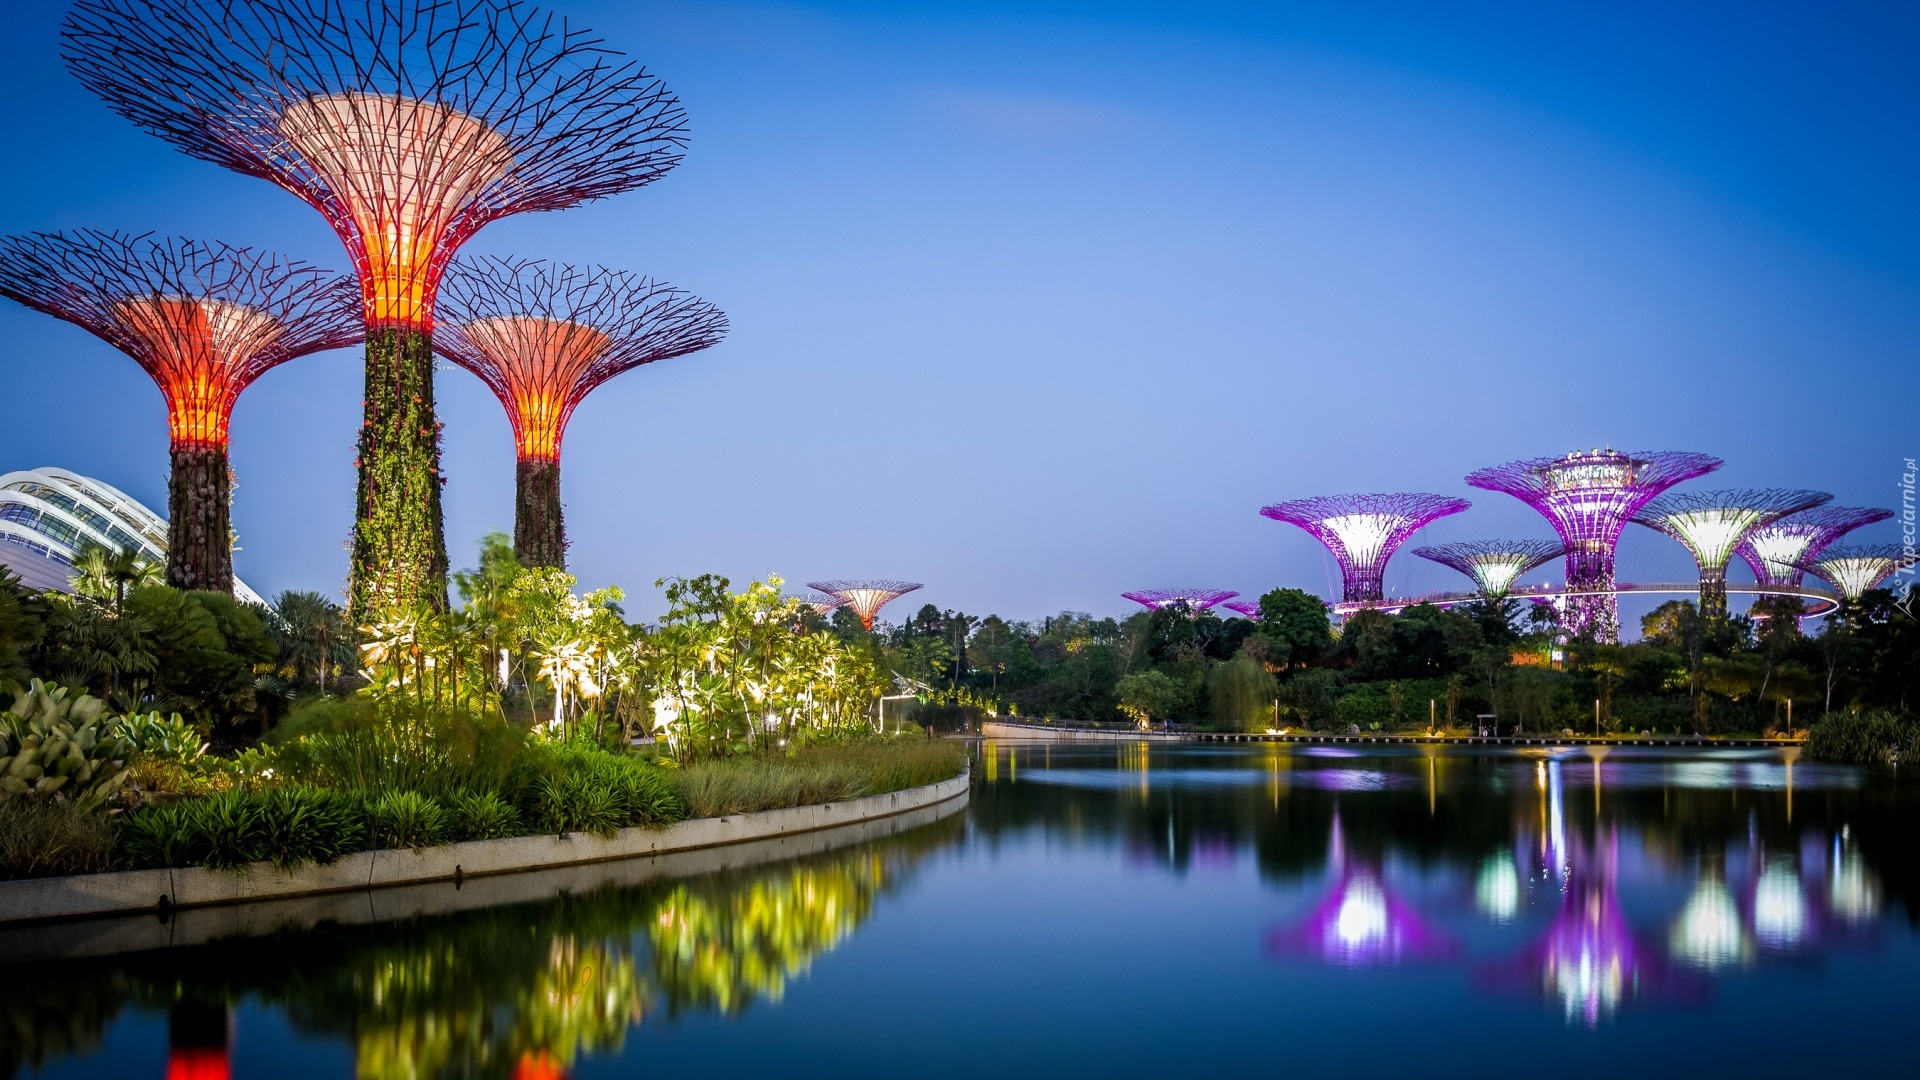 Singapur, Futurystyczny ogród Gardens by the Bay, Woda, Światła, Wieczór, Zatoka, Krzaki, Drzewa, Odbicie